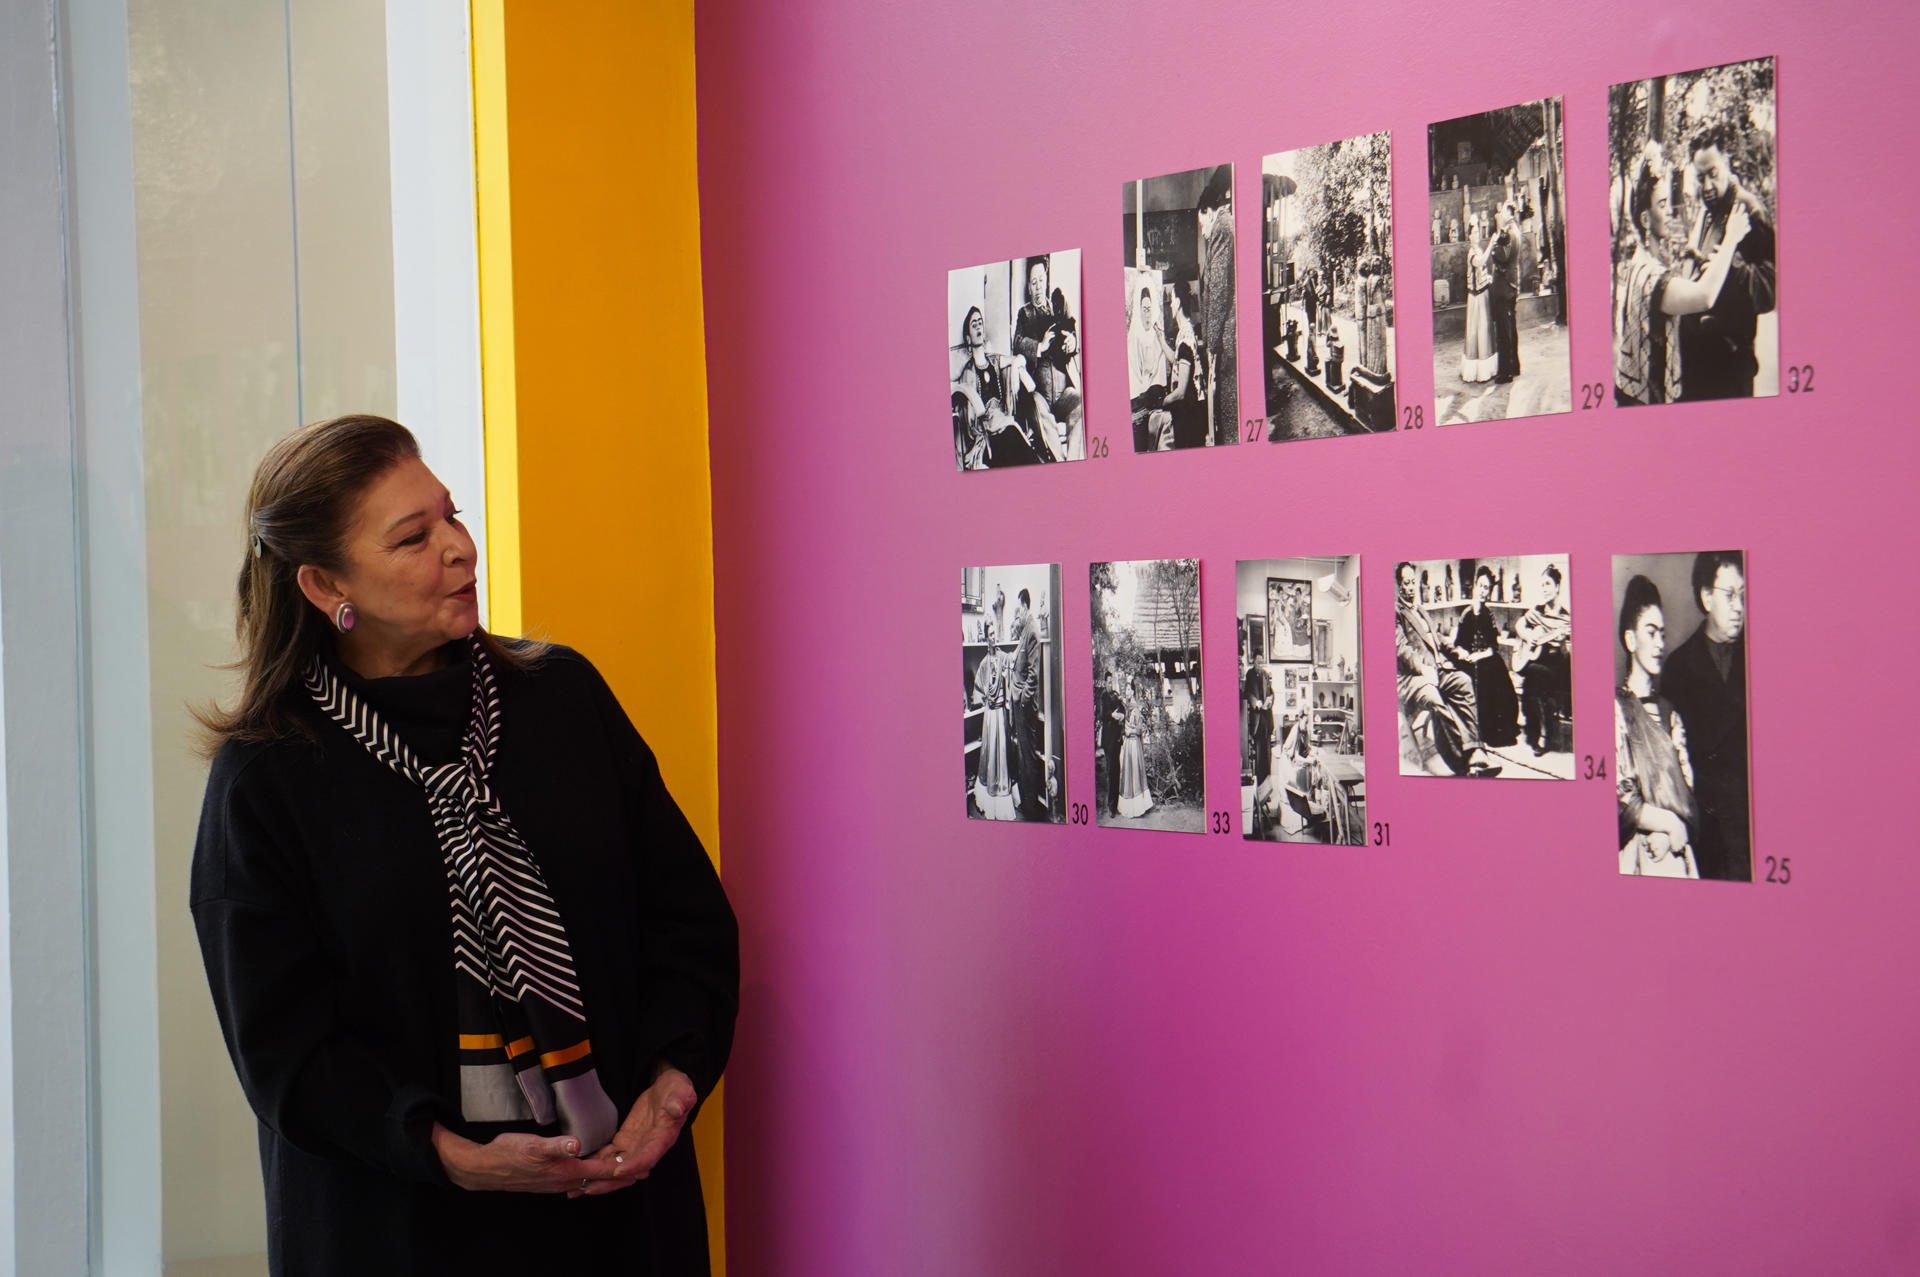 La embajadora de México en Bolivia, María Teresa Mercado, habla en la exposición fotográfica sobre la vida y obra de los artistas Frida Kahlo y Diego Rivera, el 15 de diciembre de 2022 en La Paz (Bolivia). EFE/Javier Mamani.